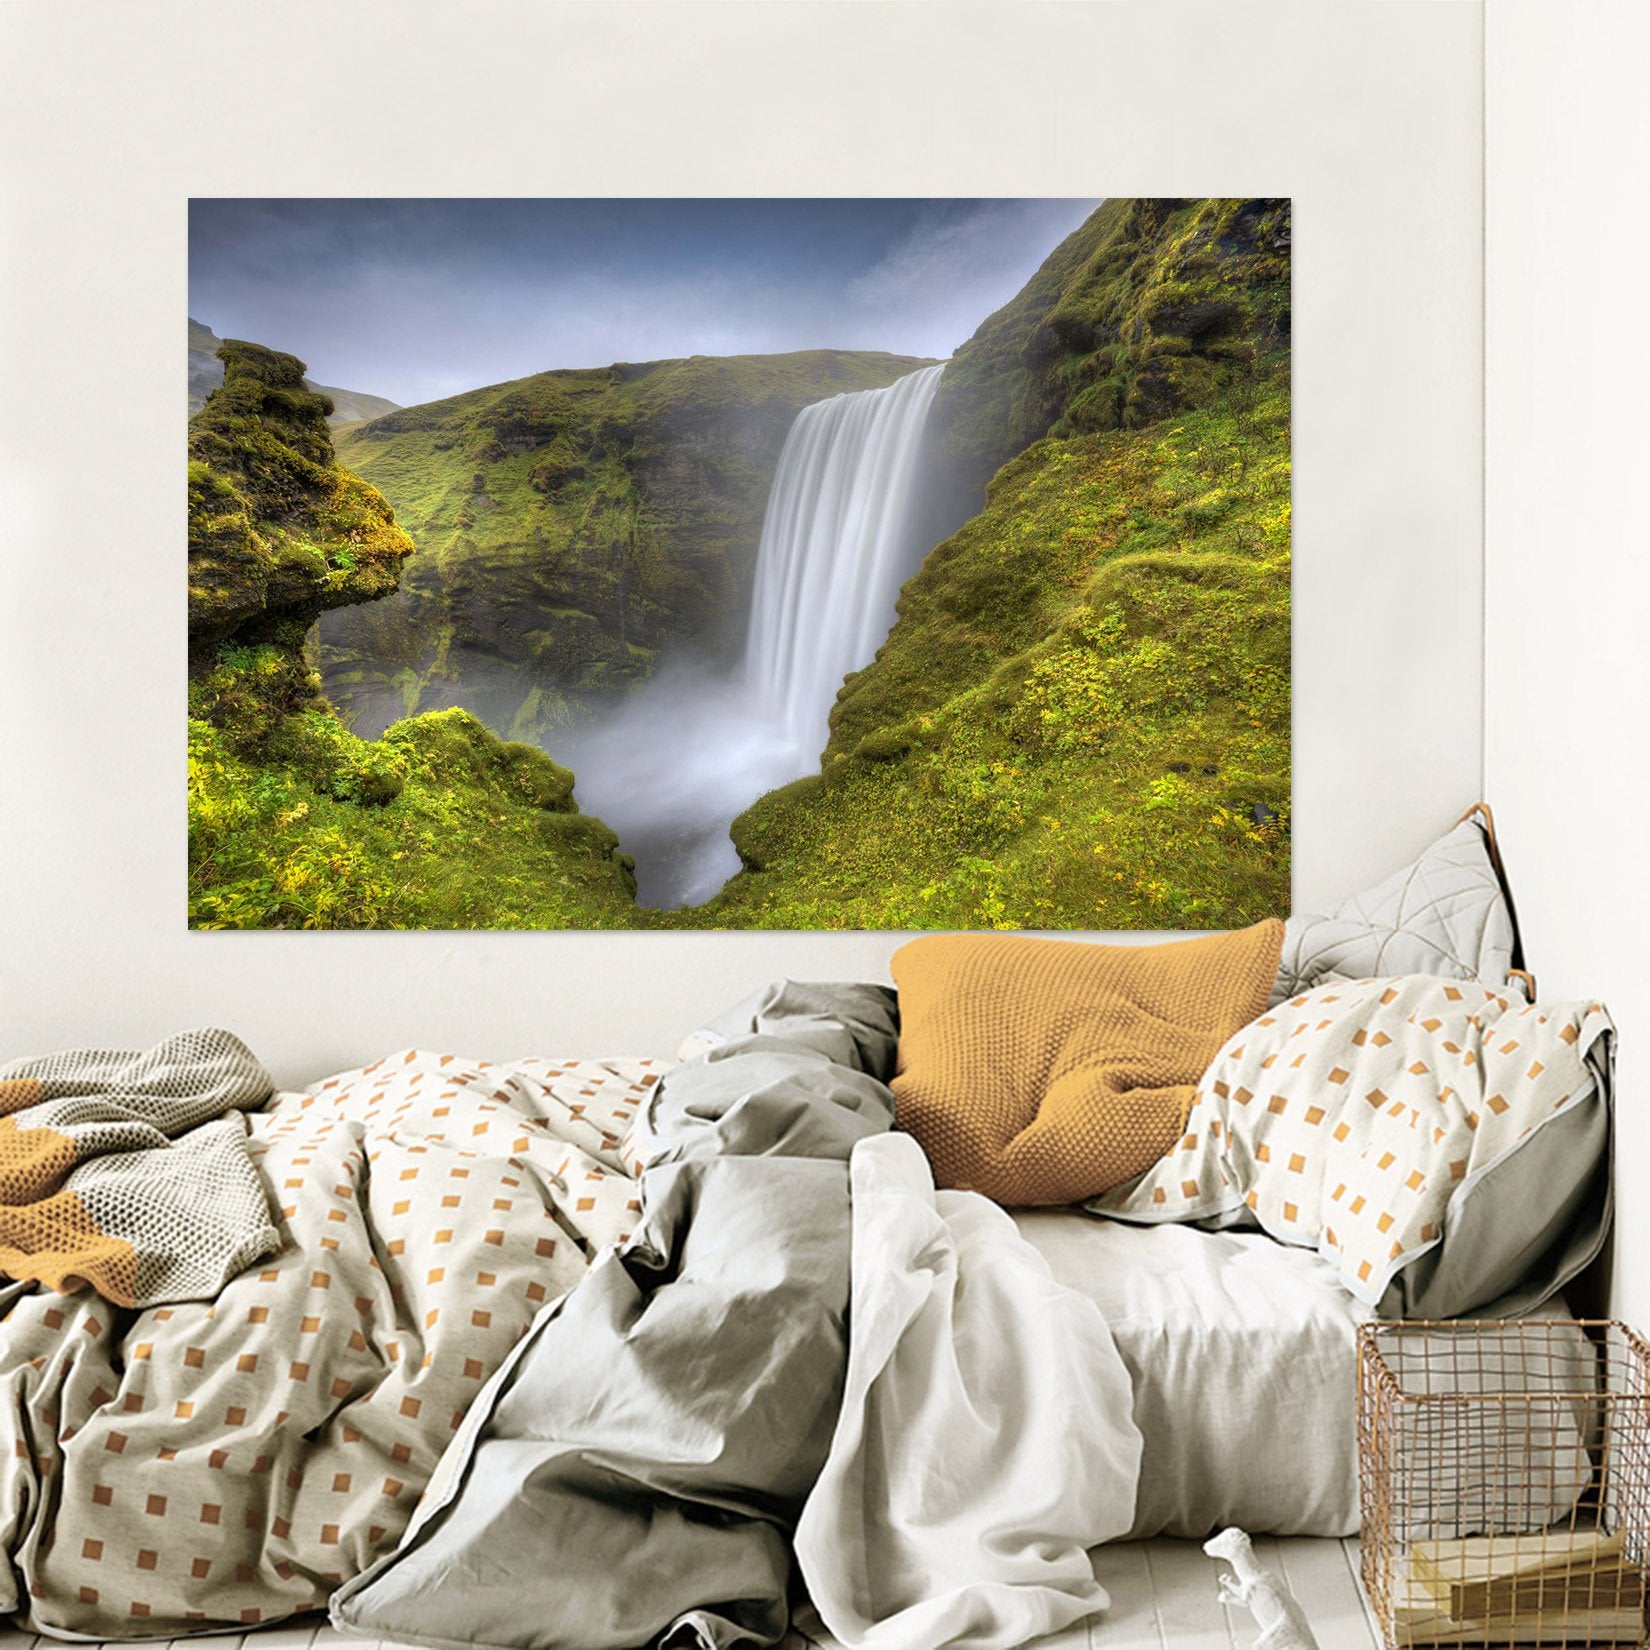 3D Alpine Waterfall 165 Marco Carmassi Wall Sticker Wallpaper AJ Wallpaper 2 